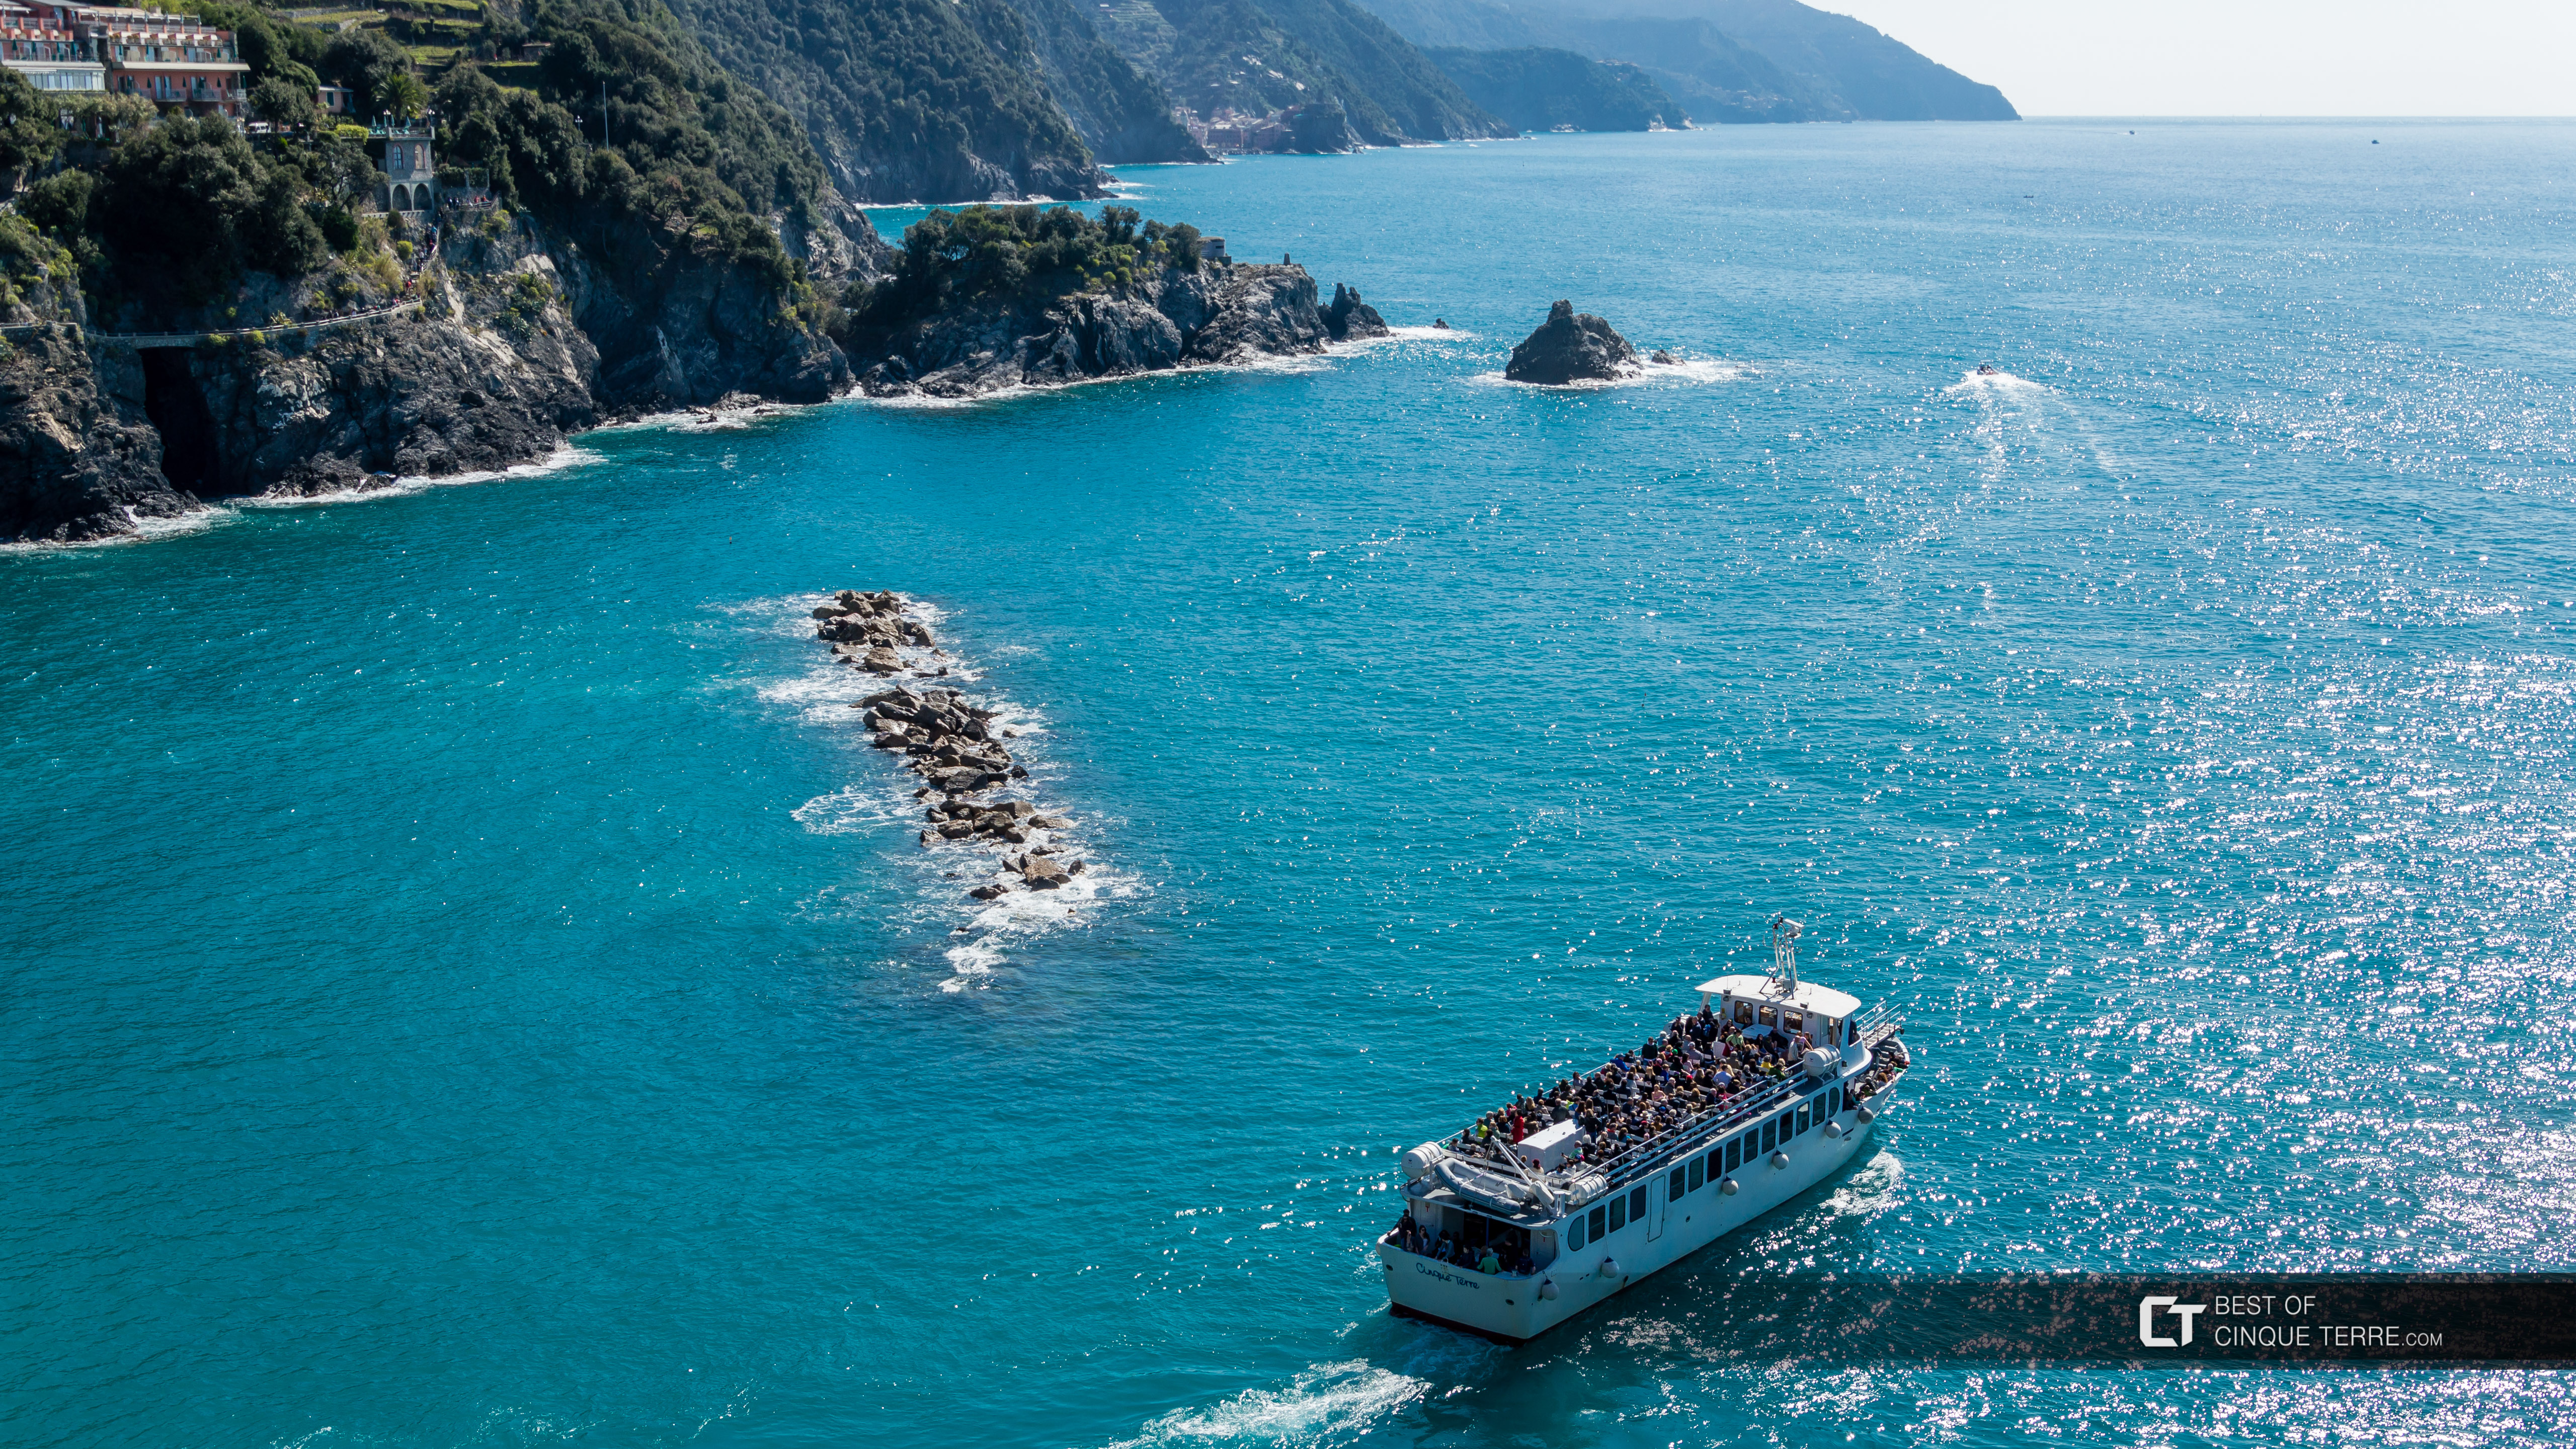 Barco en las Cinco Tierras durante la temporada alta, Cinque Terre, Italia